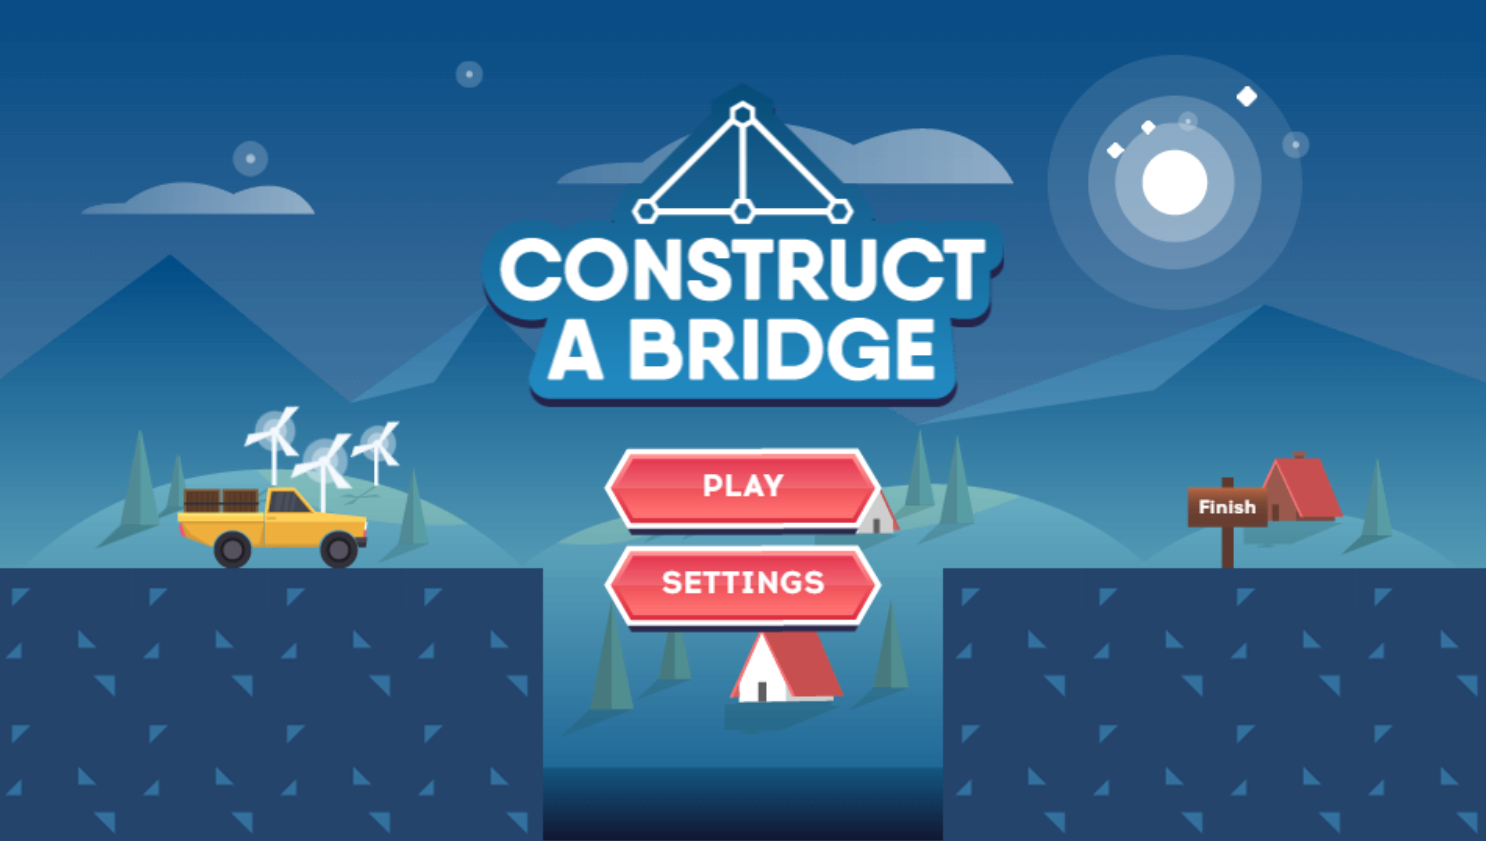 Construct a Bridge